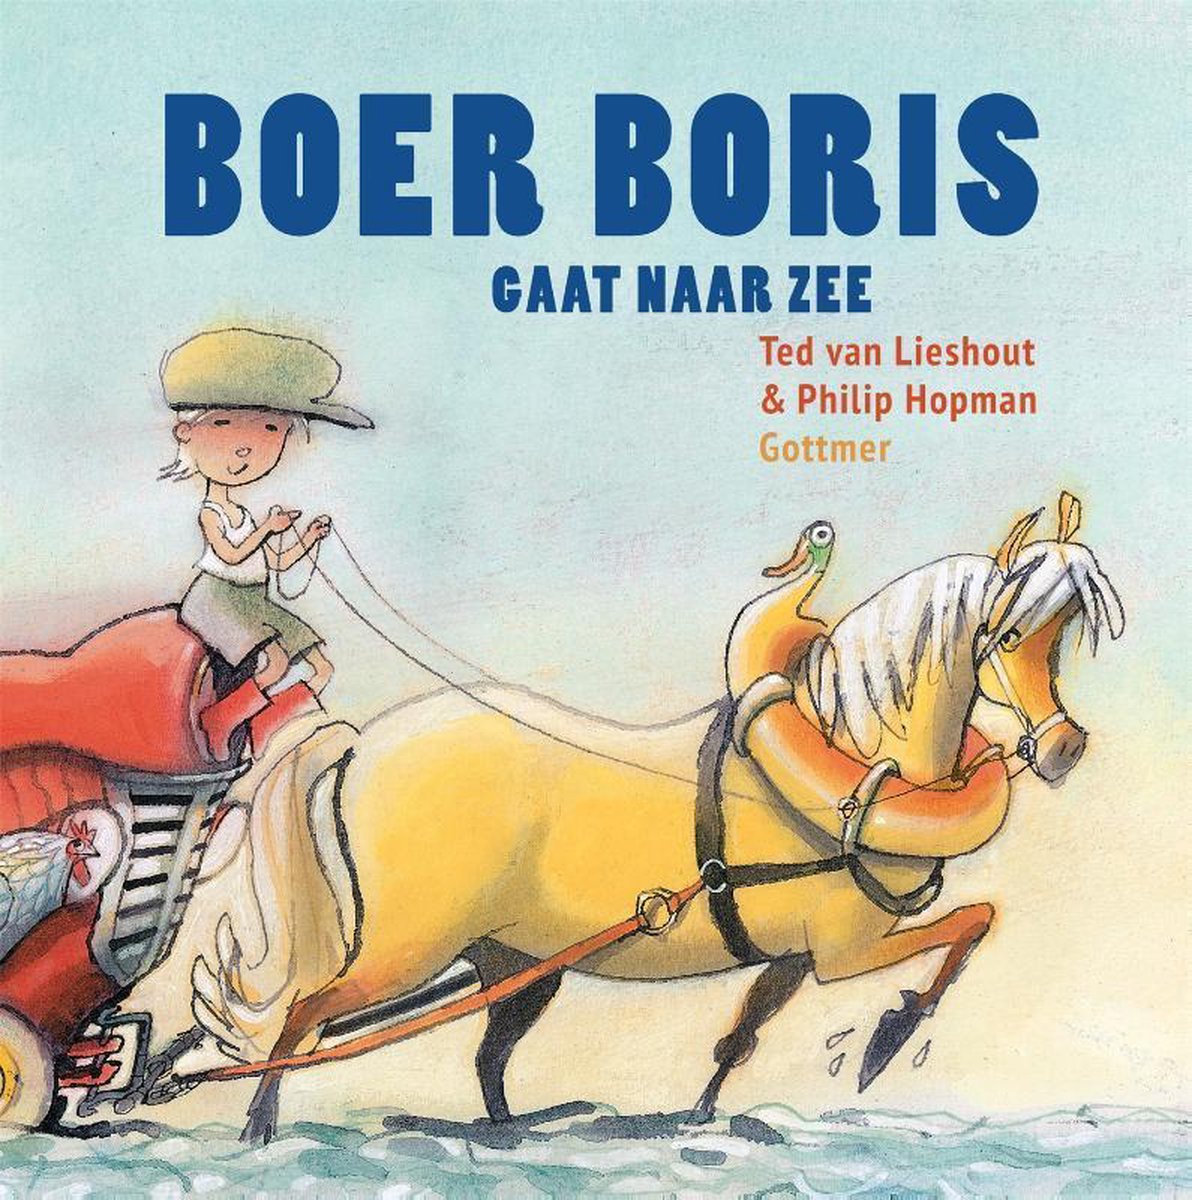 Boer Boris gaat naar zee - Ted van Lieshout (vanaf 2 jaar)